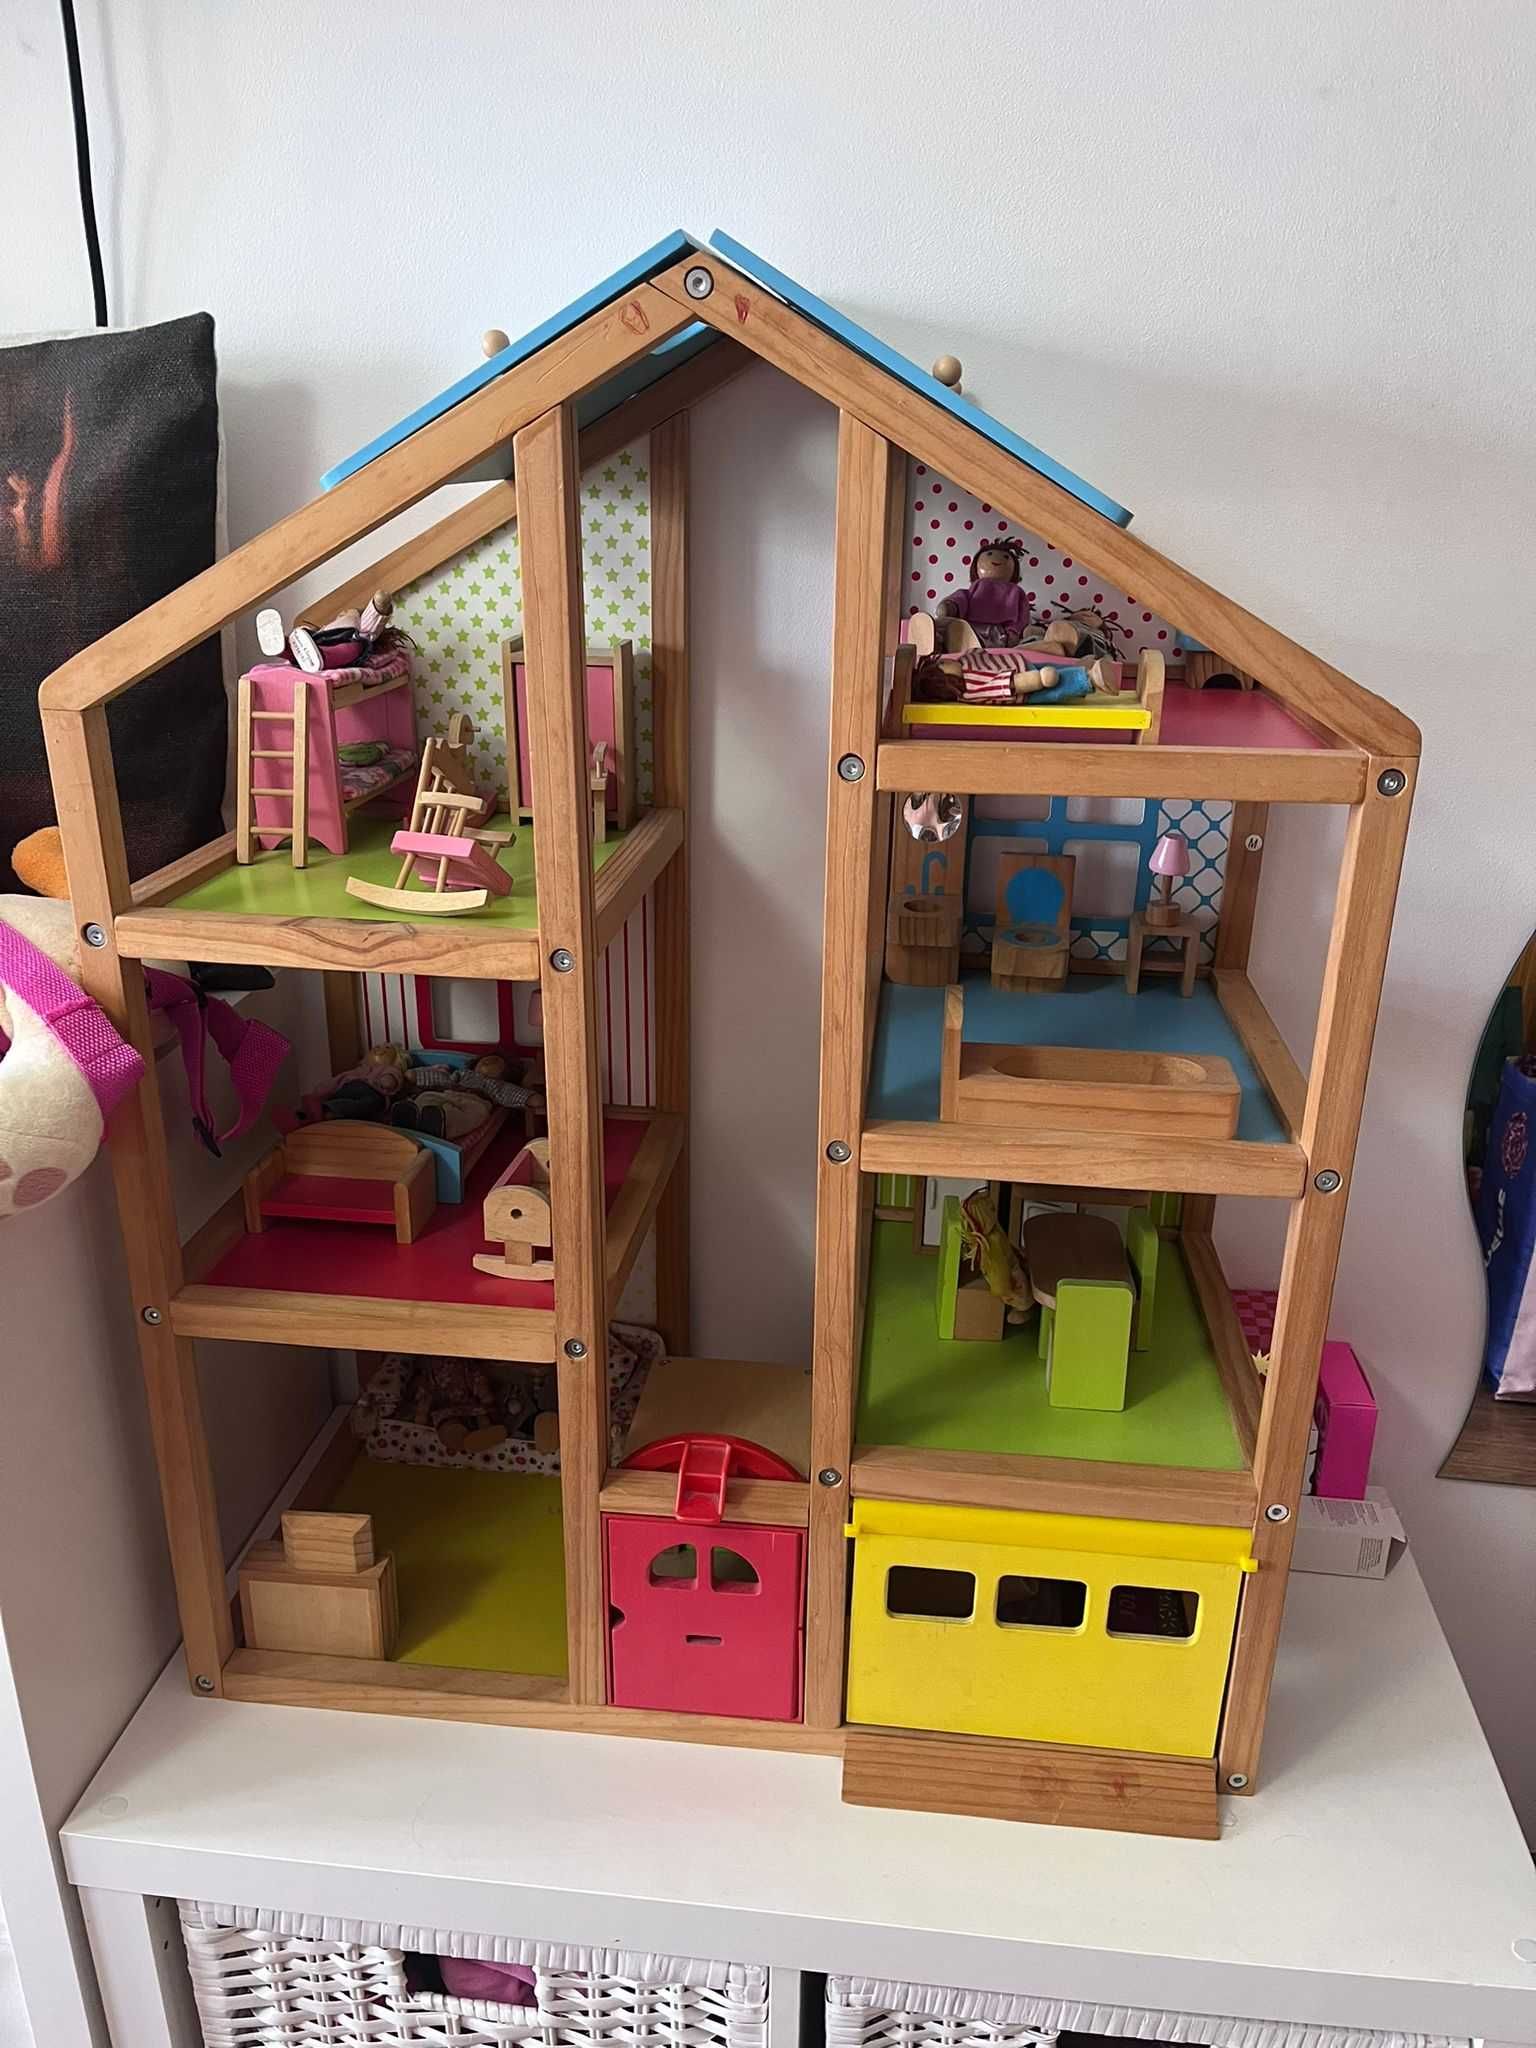 Venda casa de madeira brinquedo